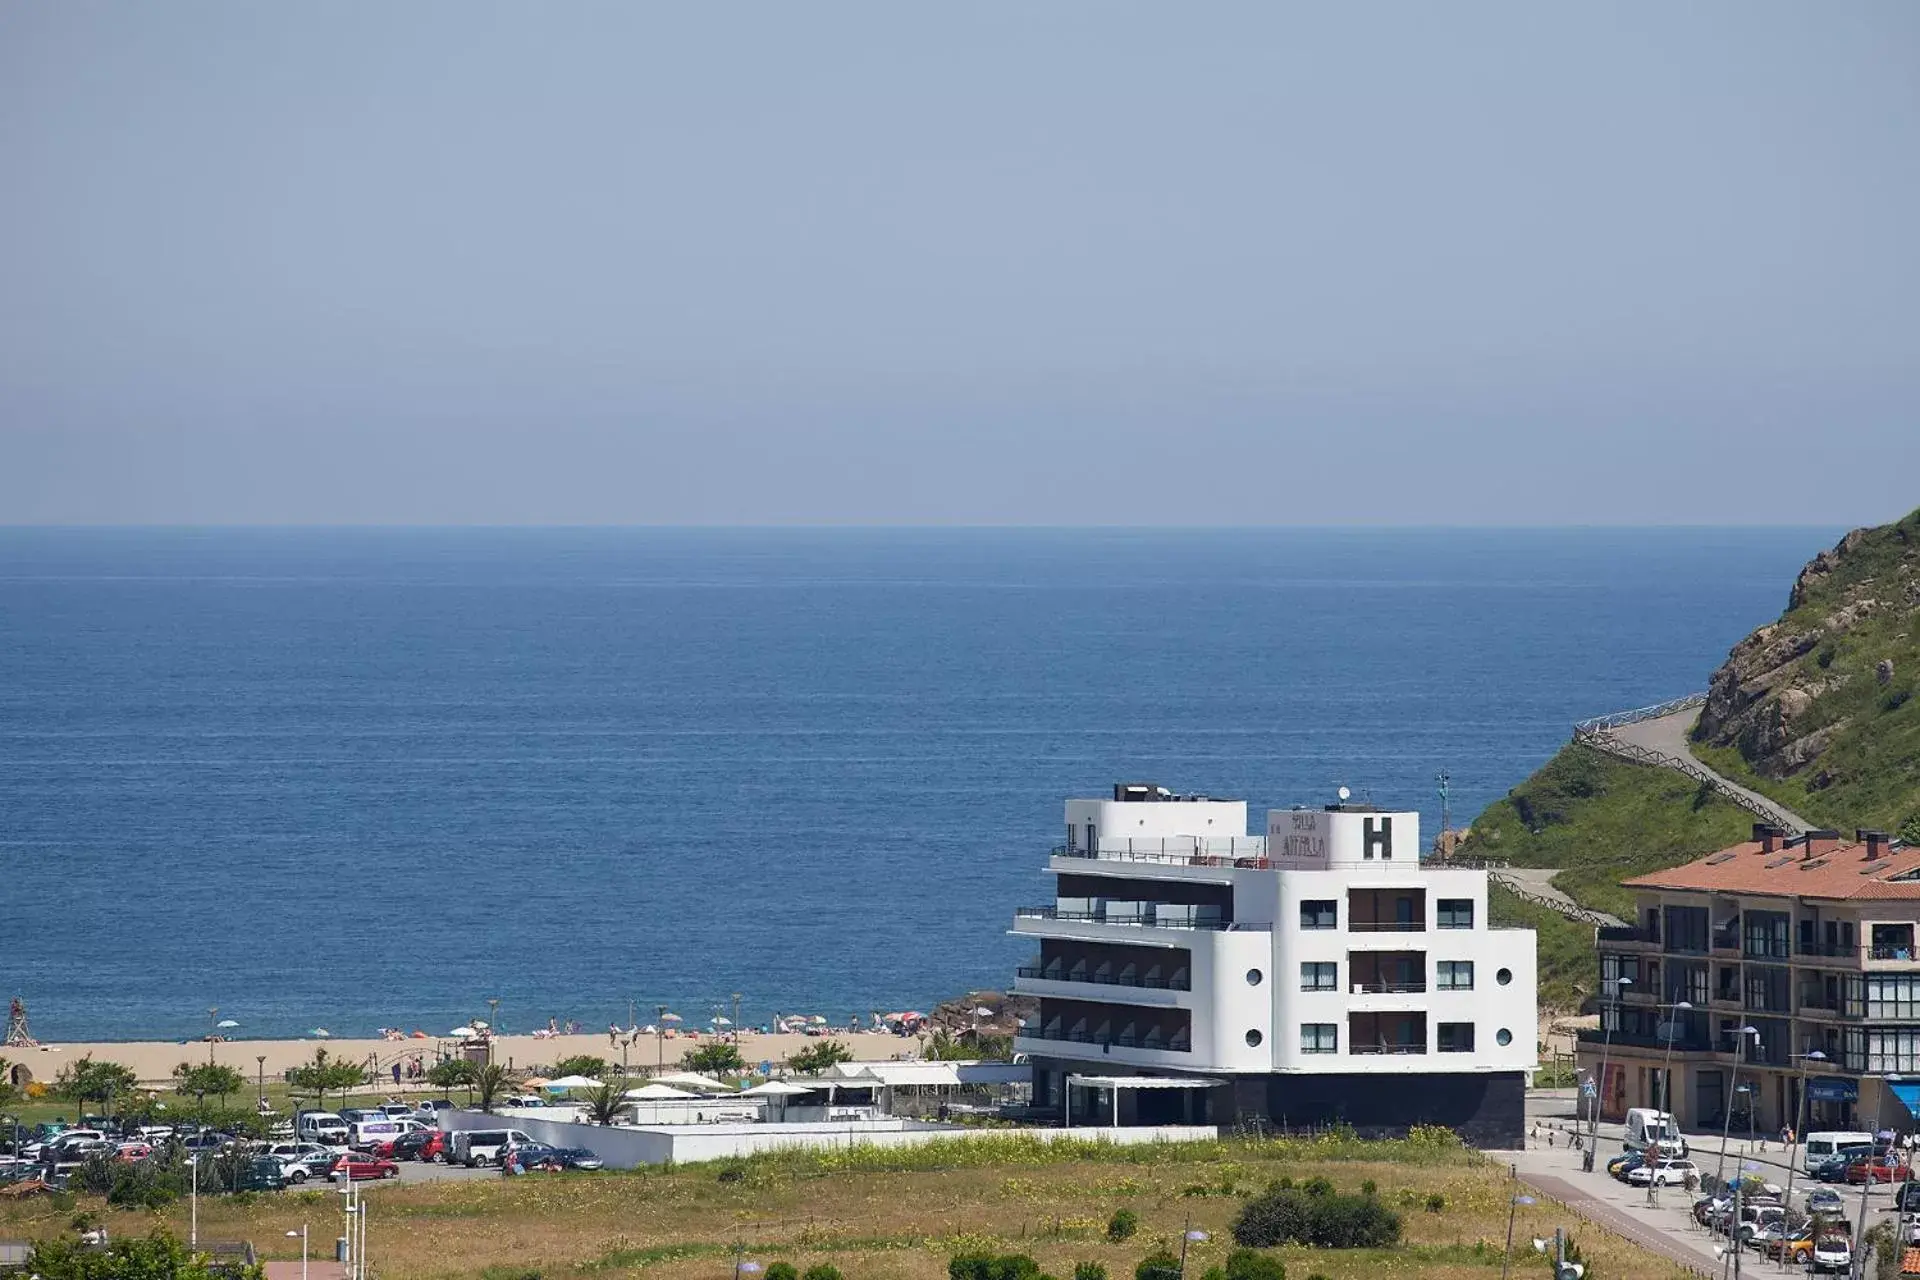 Off site, Sea View in Hotel & Thalasso Villa Antilla - Habitaciones con Terraza - Thalasso incluida